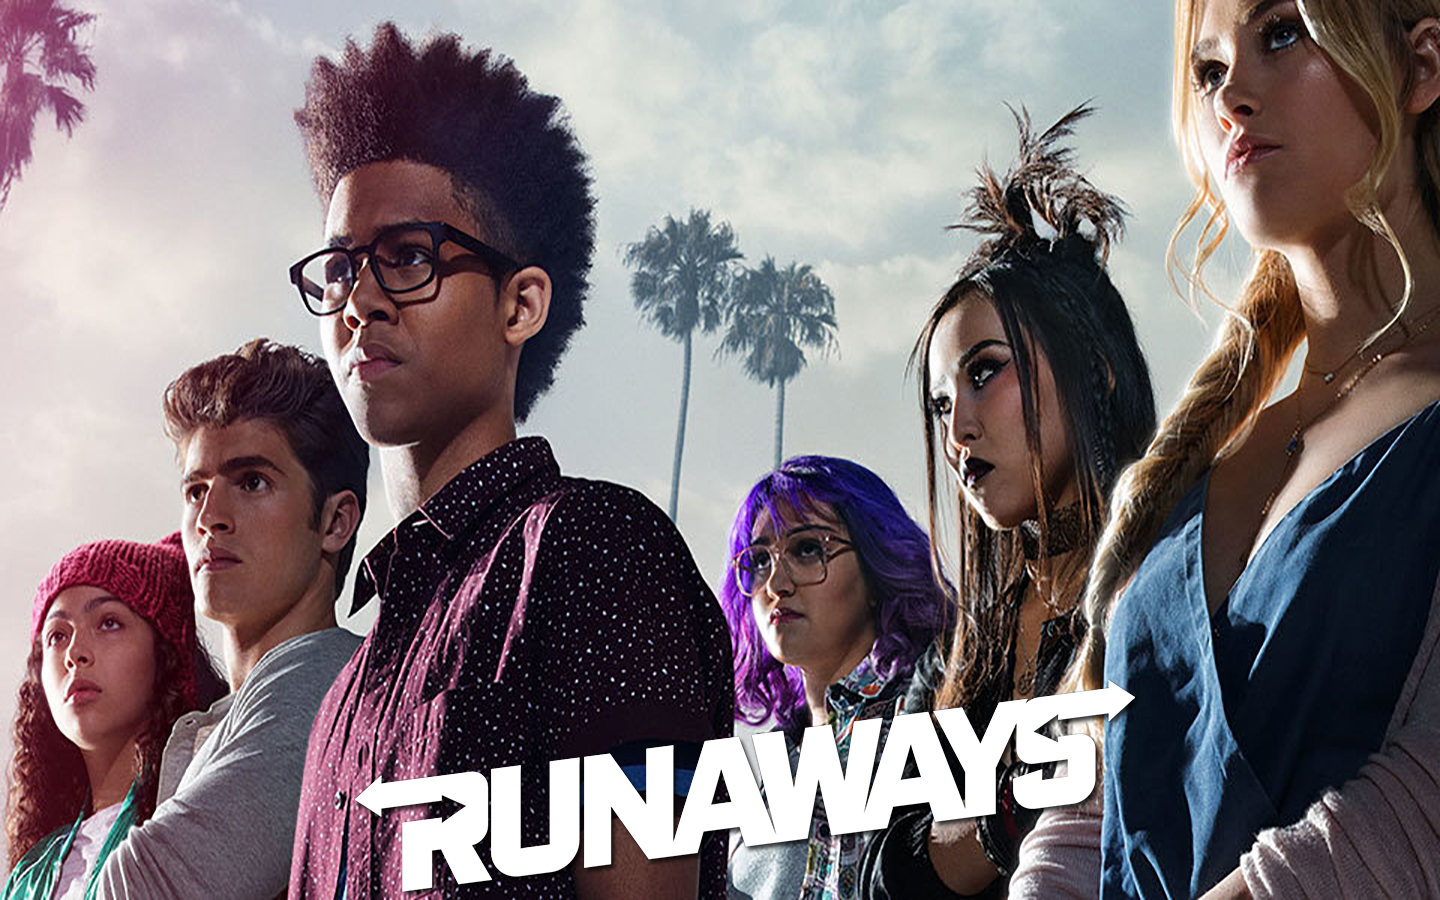 Five﻿ ﻿R﻿e﻿a﻿s﻿o﻿n﻿s﻿ ﻿Y﻿o﻿u﻿ ﻿S﻿h﻿o﻿u﻿l﻿d﻿ ﻿B﻿e﻿ ﻿W﻿a﻿t﻿c﻿h﻿i﻿n﻿g﻿ ﻿M﻿a﻿r﻿v﻿e﻿l﻿’﻿s﻿ ﻿’R﻿u﻿n﻿a﻿w﻿a﻿y﻿s’﻿